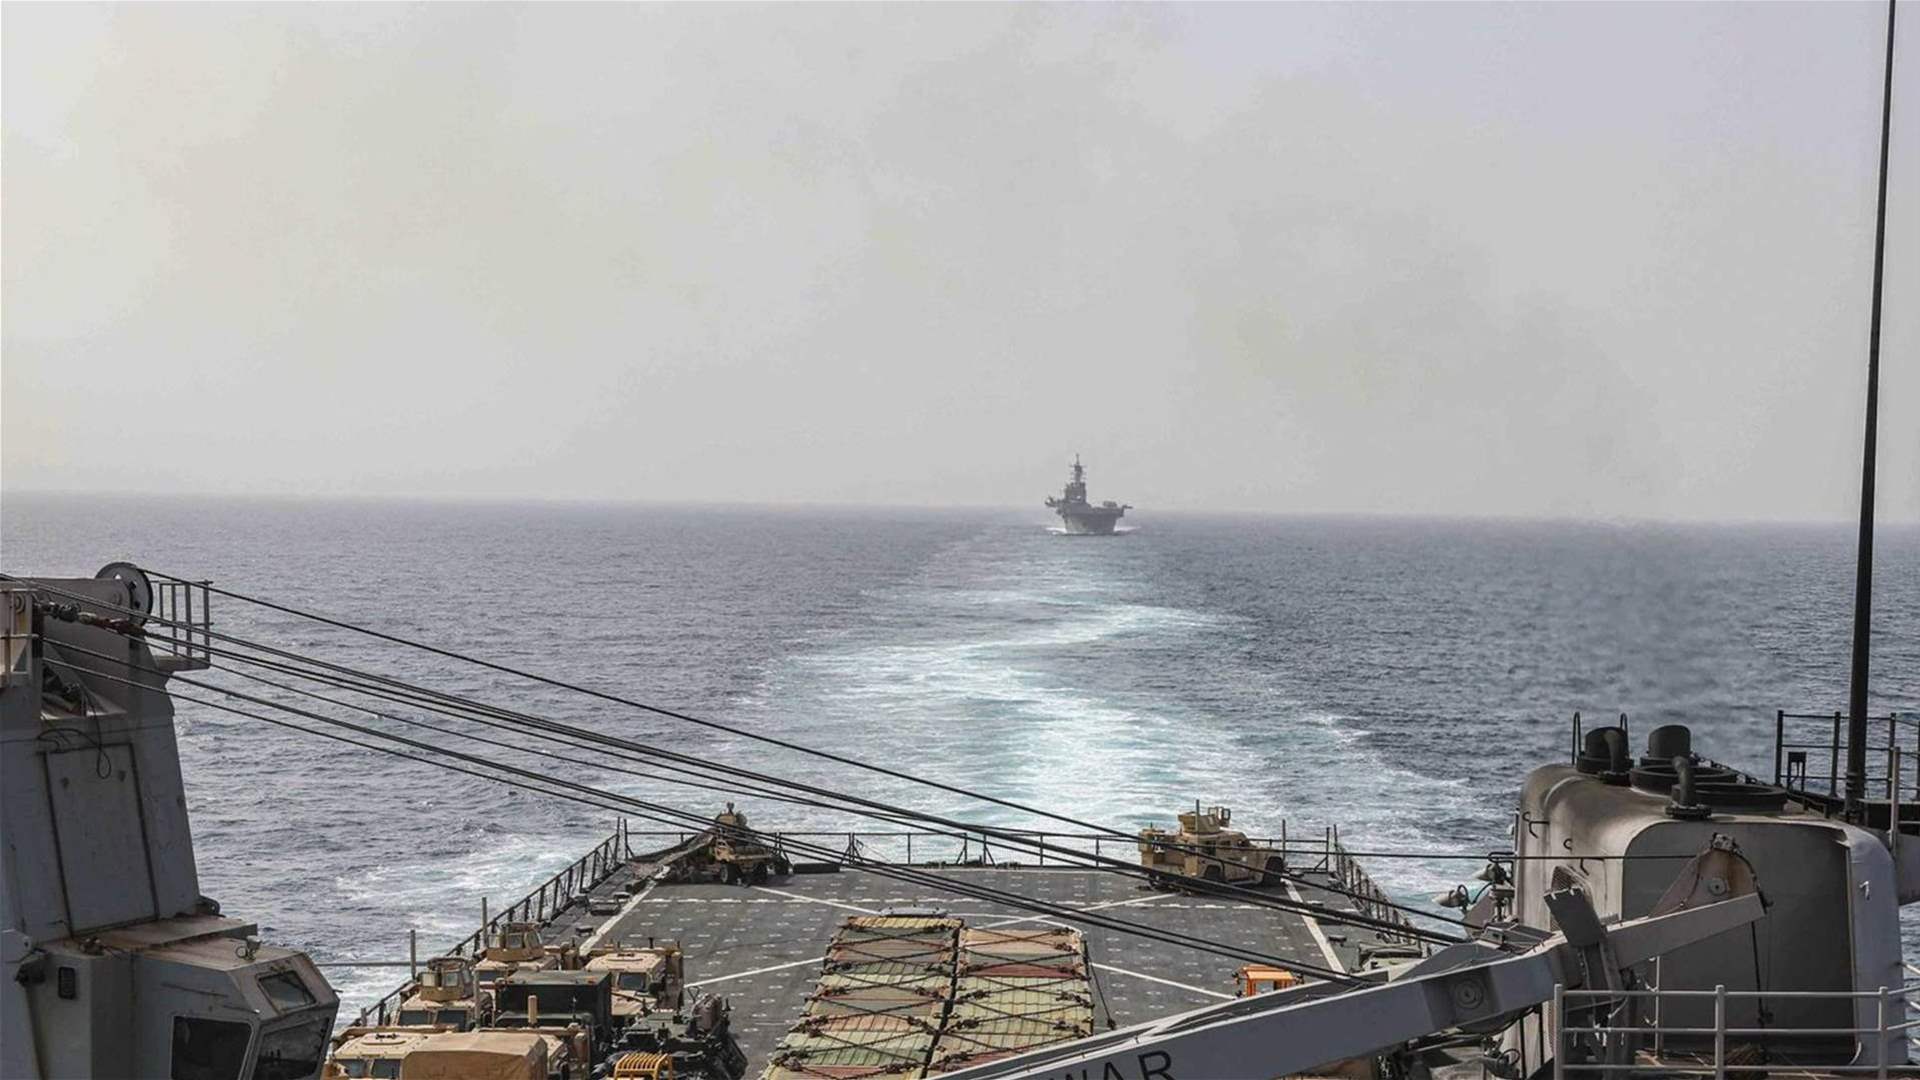 هيئة عمليات التجارة البحرية البريطانية تلقّت تقريرًا عن واقعة بحرية جنوب غربي عدن